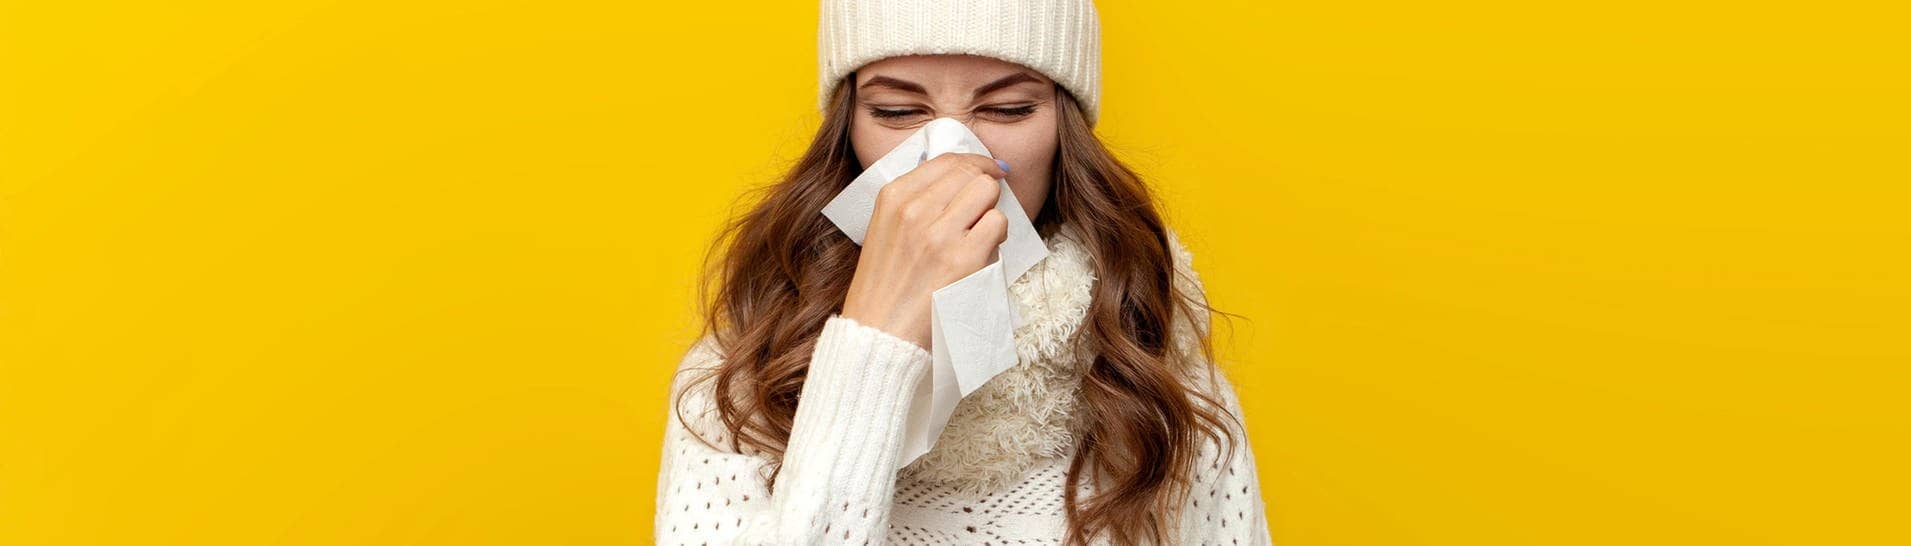 Junge Frau in Winter-Kleidung schnäuzt die Nase. Sie ist vermutlich krank und wird eine Krankschreibung für den Arbeitgeber brauchen oder sich zumindest krankmelden.